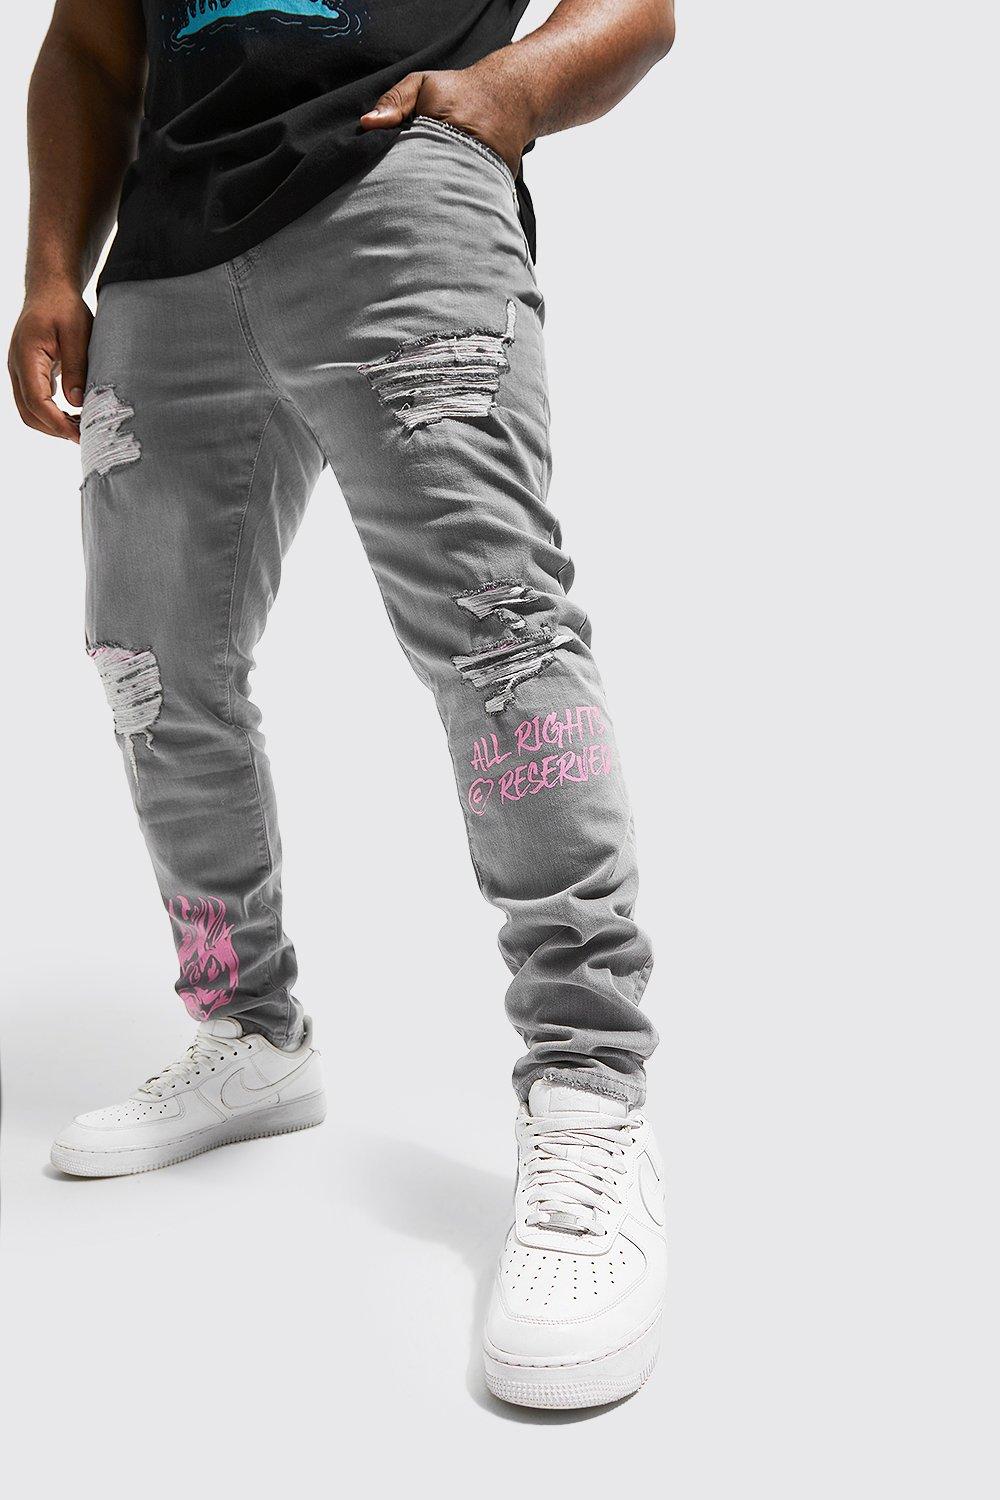 grande taille - jean skinny déchiré à imprimé bandana et graffiti homme - gris - 42, gris